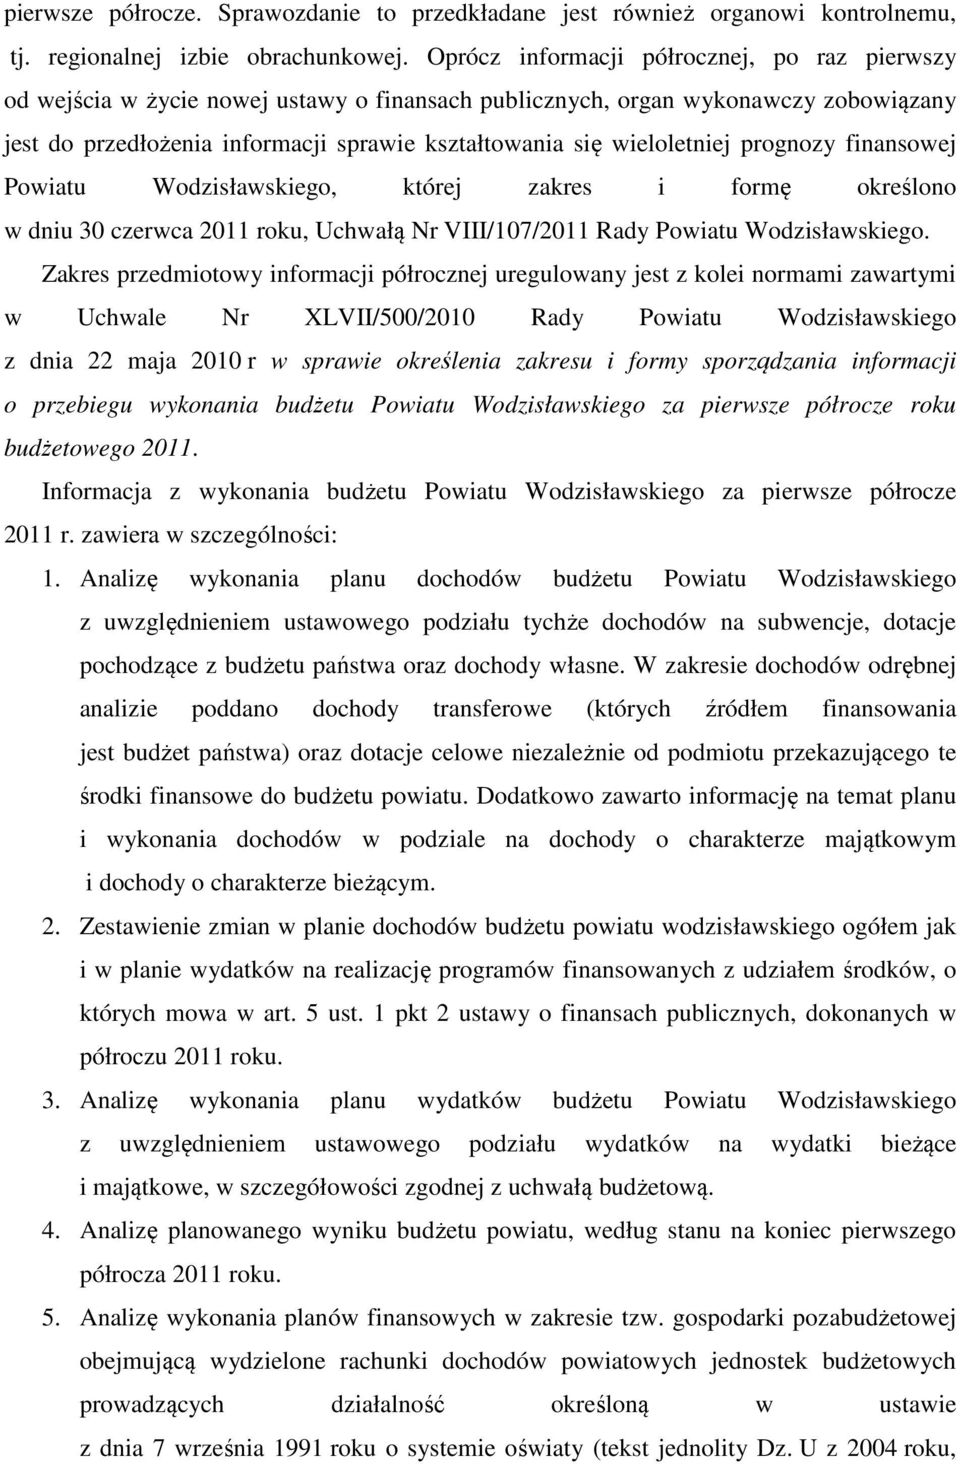 wieloletniej prognozy finansowej Powiatu Wodzisławskiego, której zakres i formę określono w dniu 30 czerwca 2011 roku, Uchwałą Nr VIII/107/2011 Rady Powiatu Wodzisławskiego.